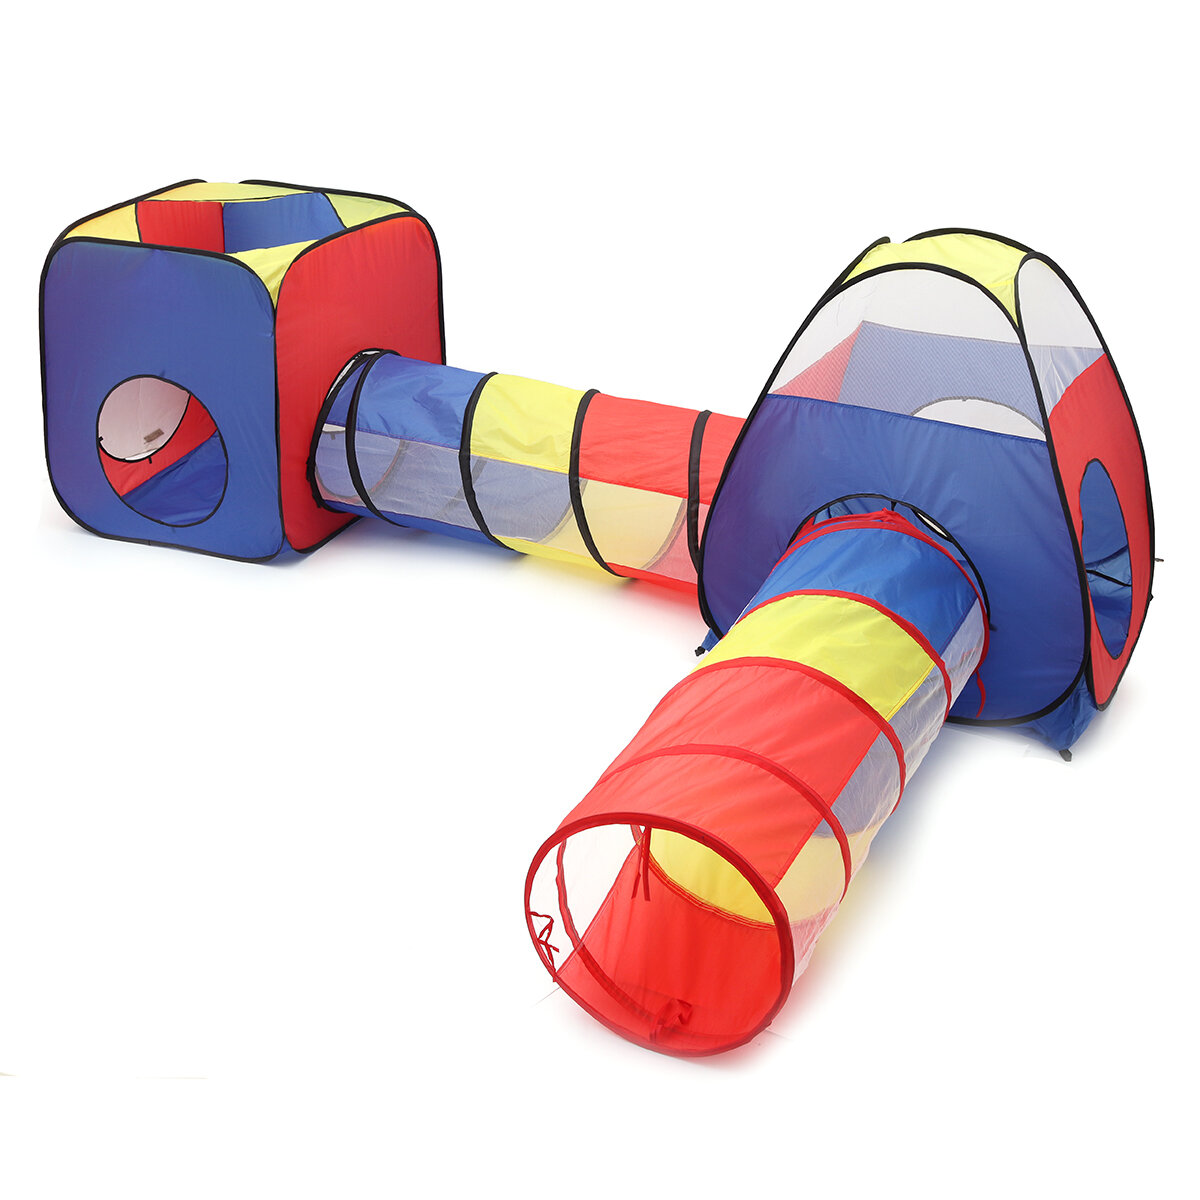 4 in 1 Opvouwbare basketbalspeelgoedset voor kinderen Driehoekstent + tunnel + tent met vier hoeken 